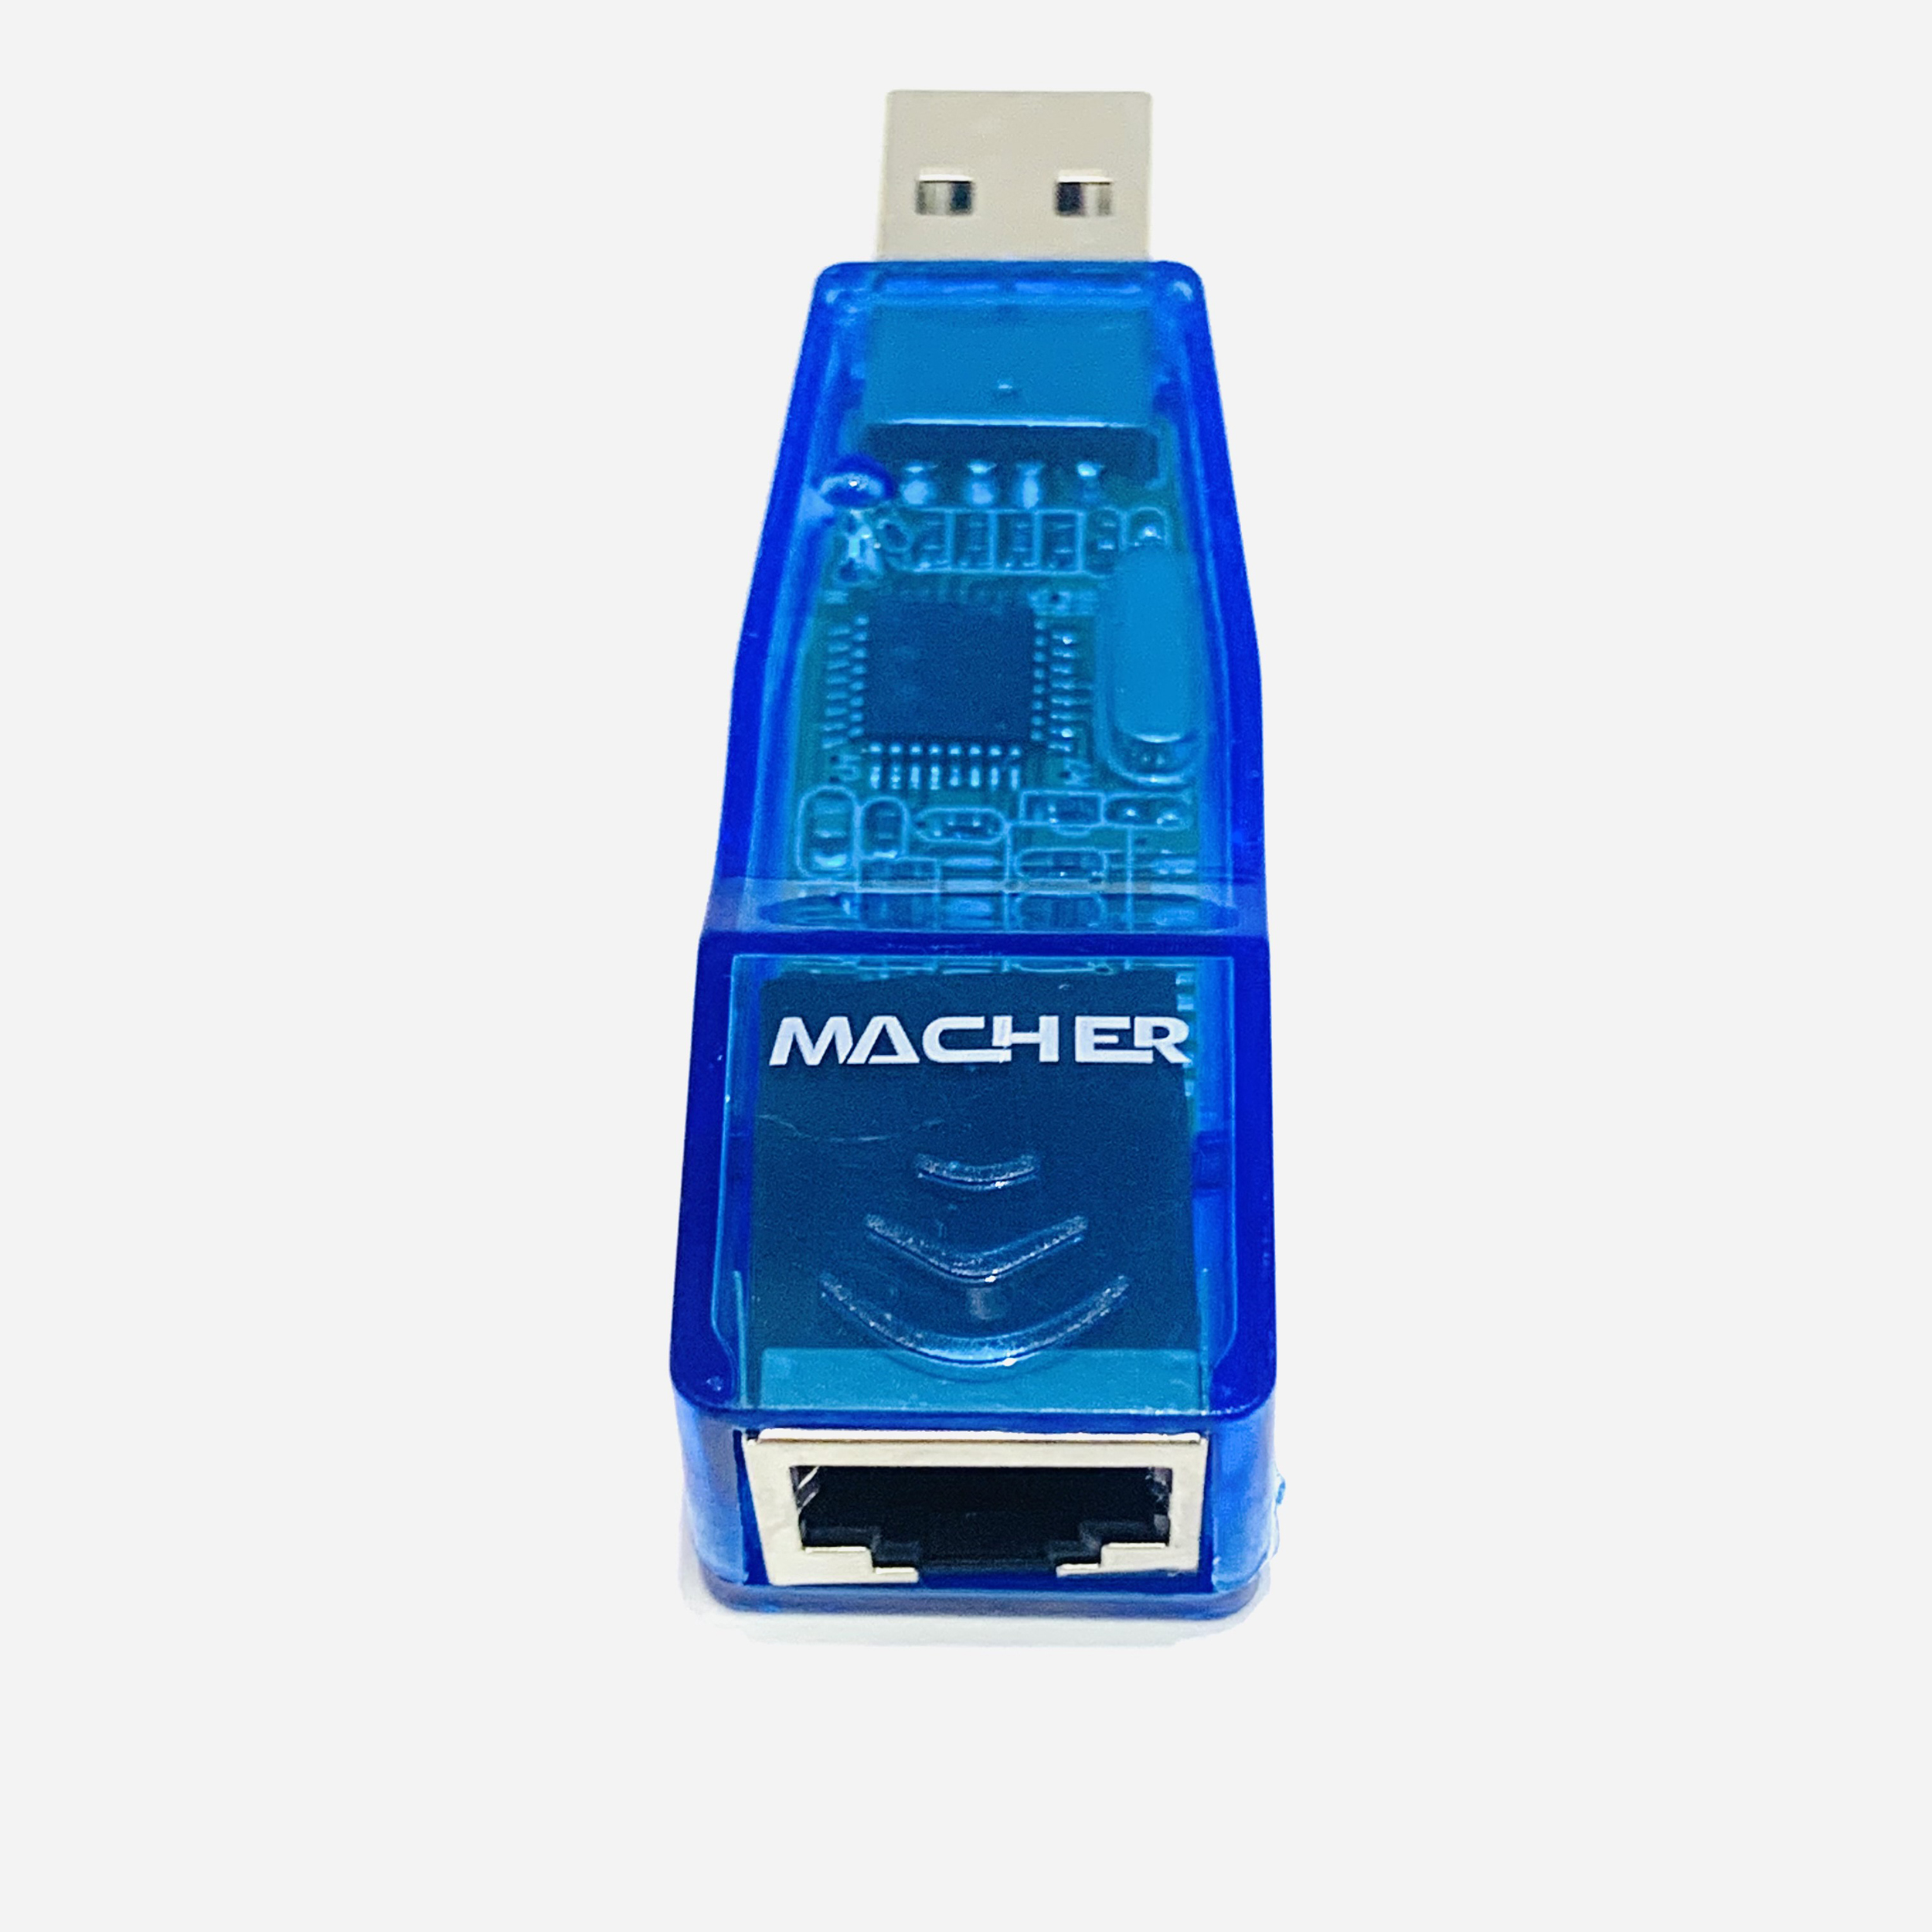 نقد و بررسی مبدل USB به Ethernet مچر مدل MR-133 توسط خریداران